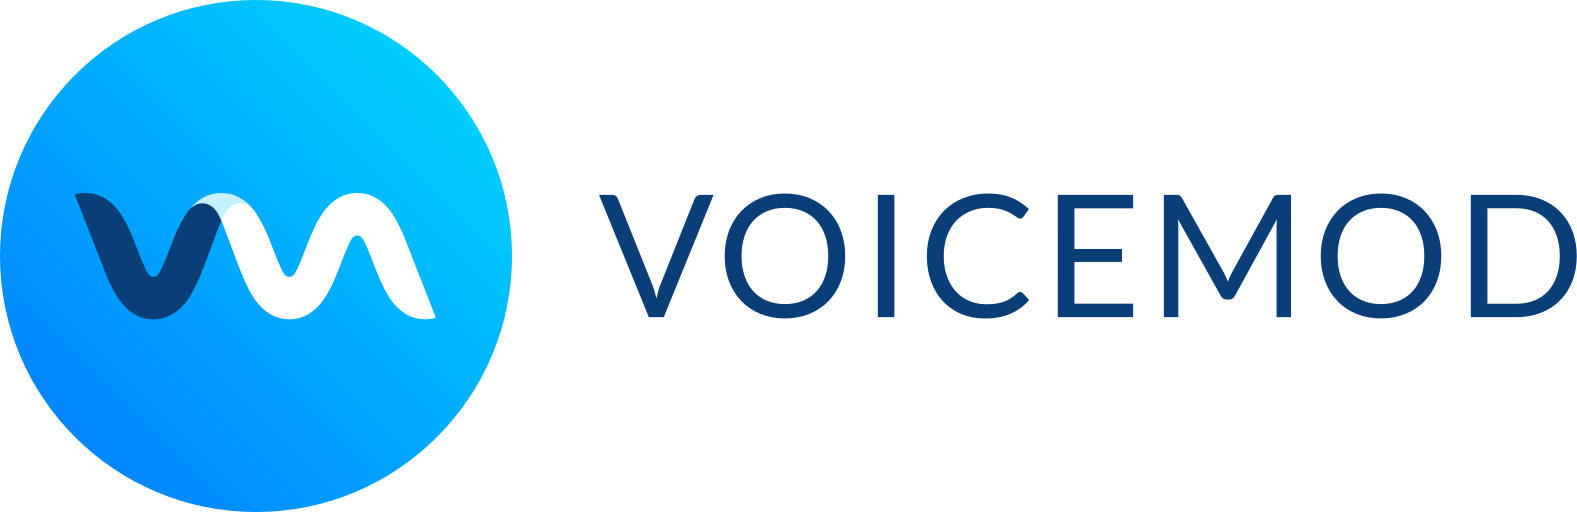 voicemod pro icon transparent png